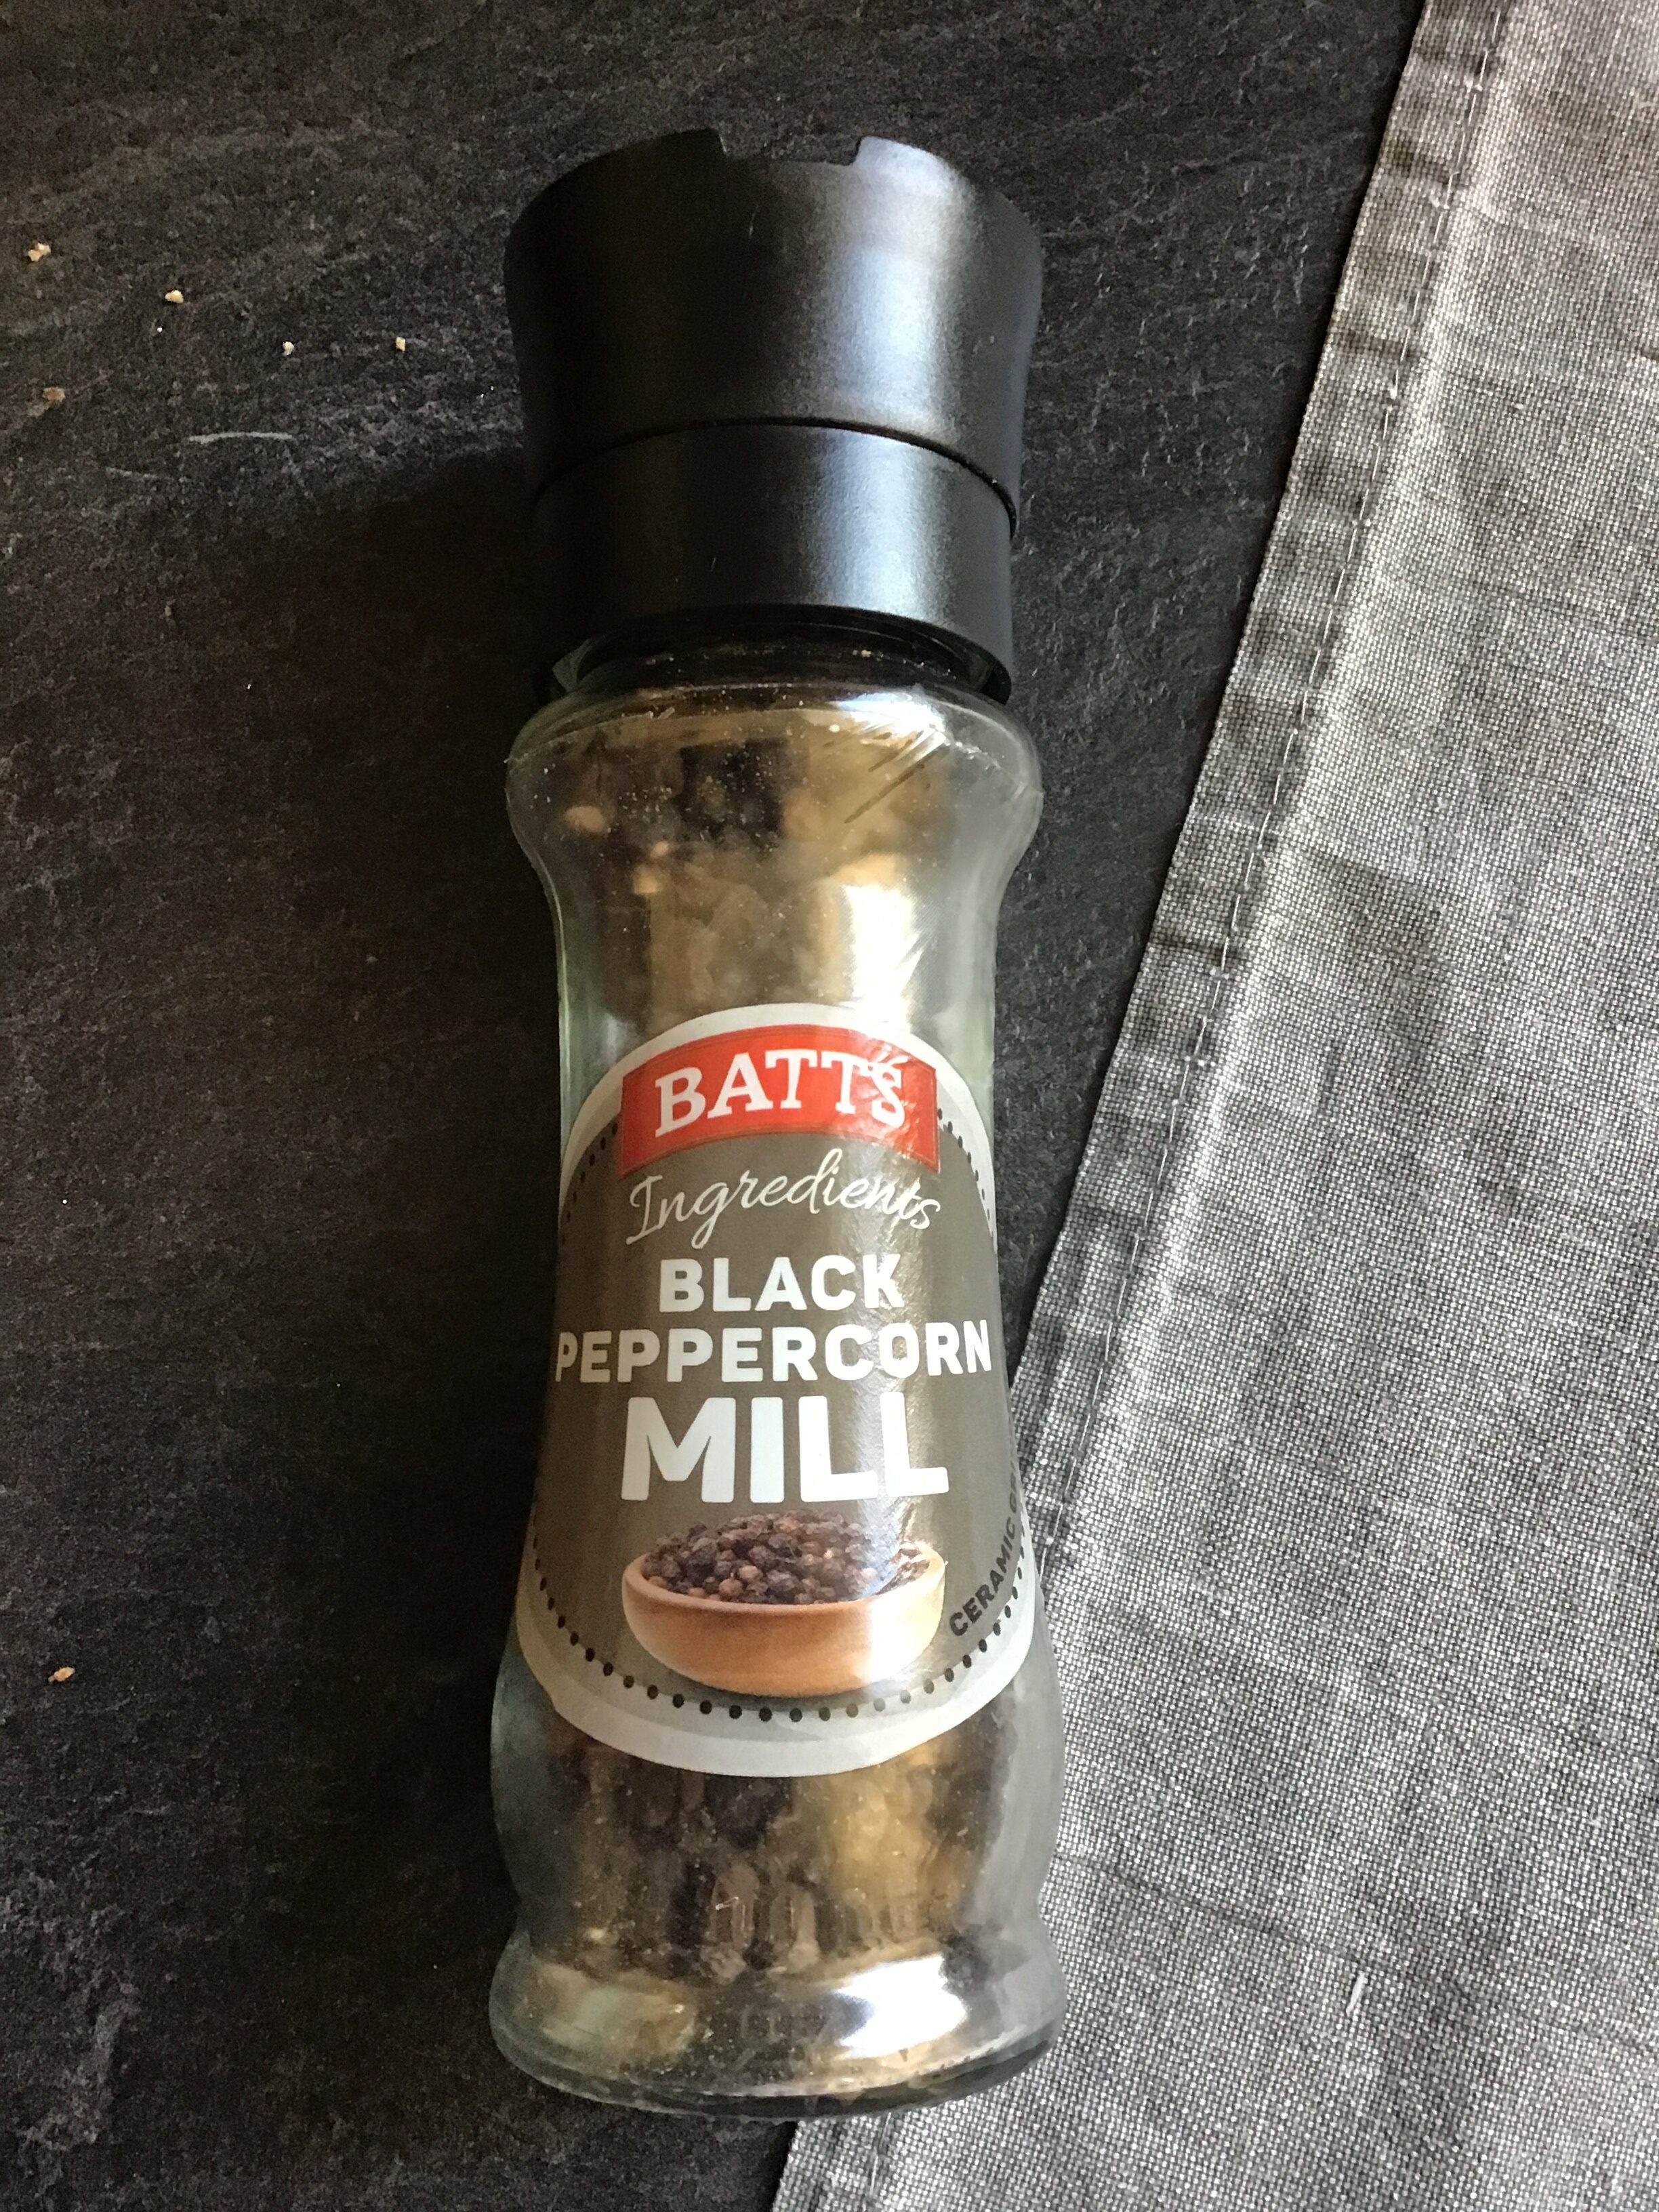 Black peppercorn mill - Producte - en